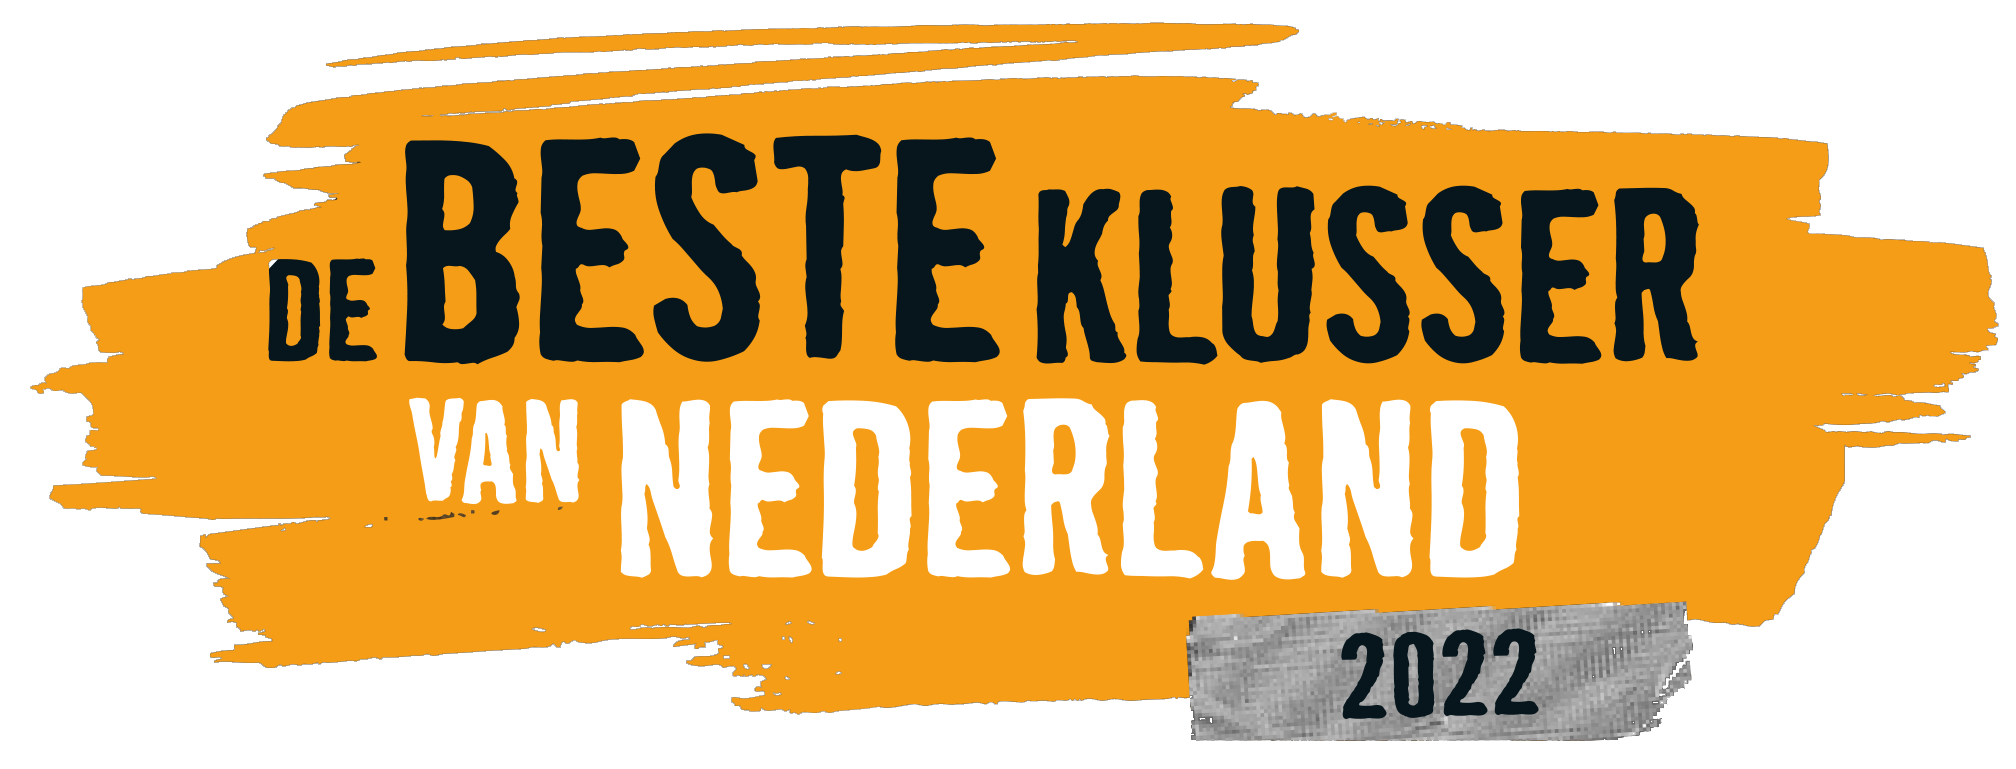 De Beste Klusser van Nederland 2022